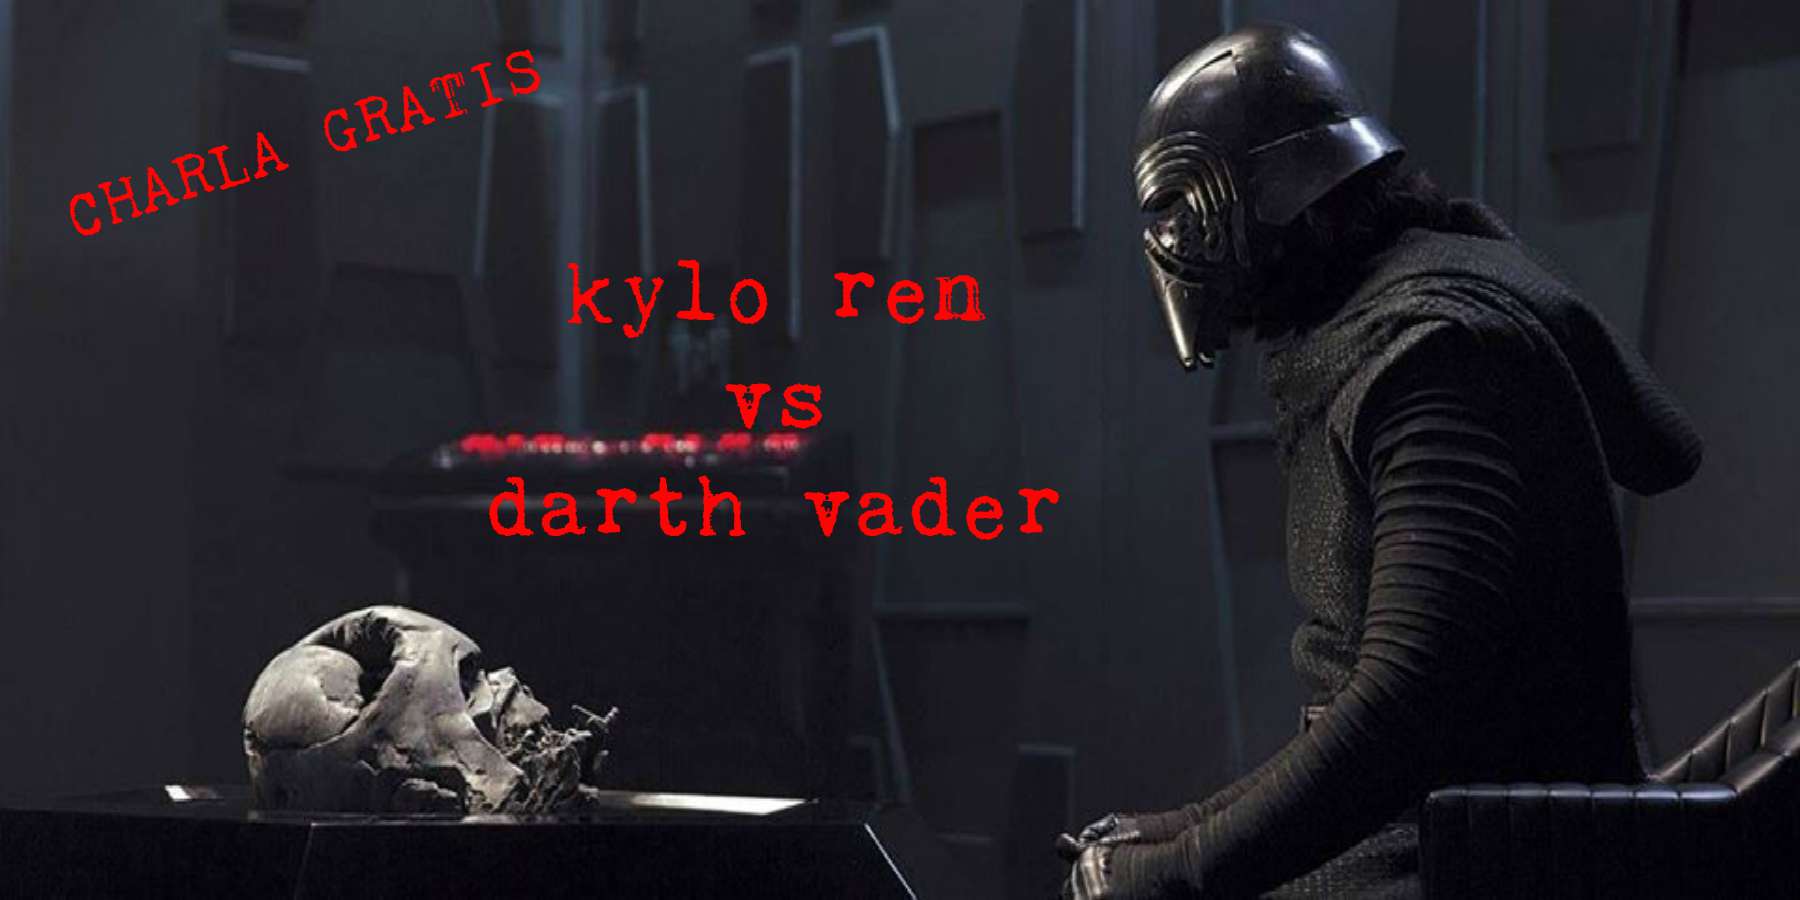 Star Wars | La admiración por el Poder Absoluto: Darth Vader y Kylo Ren